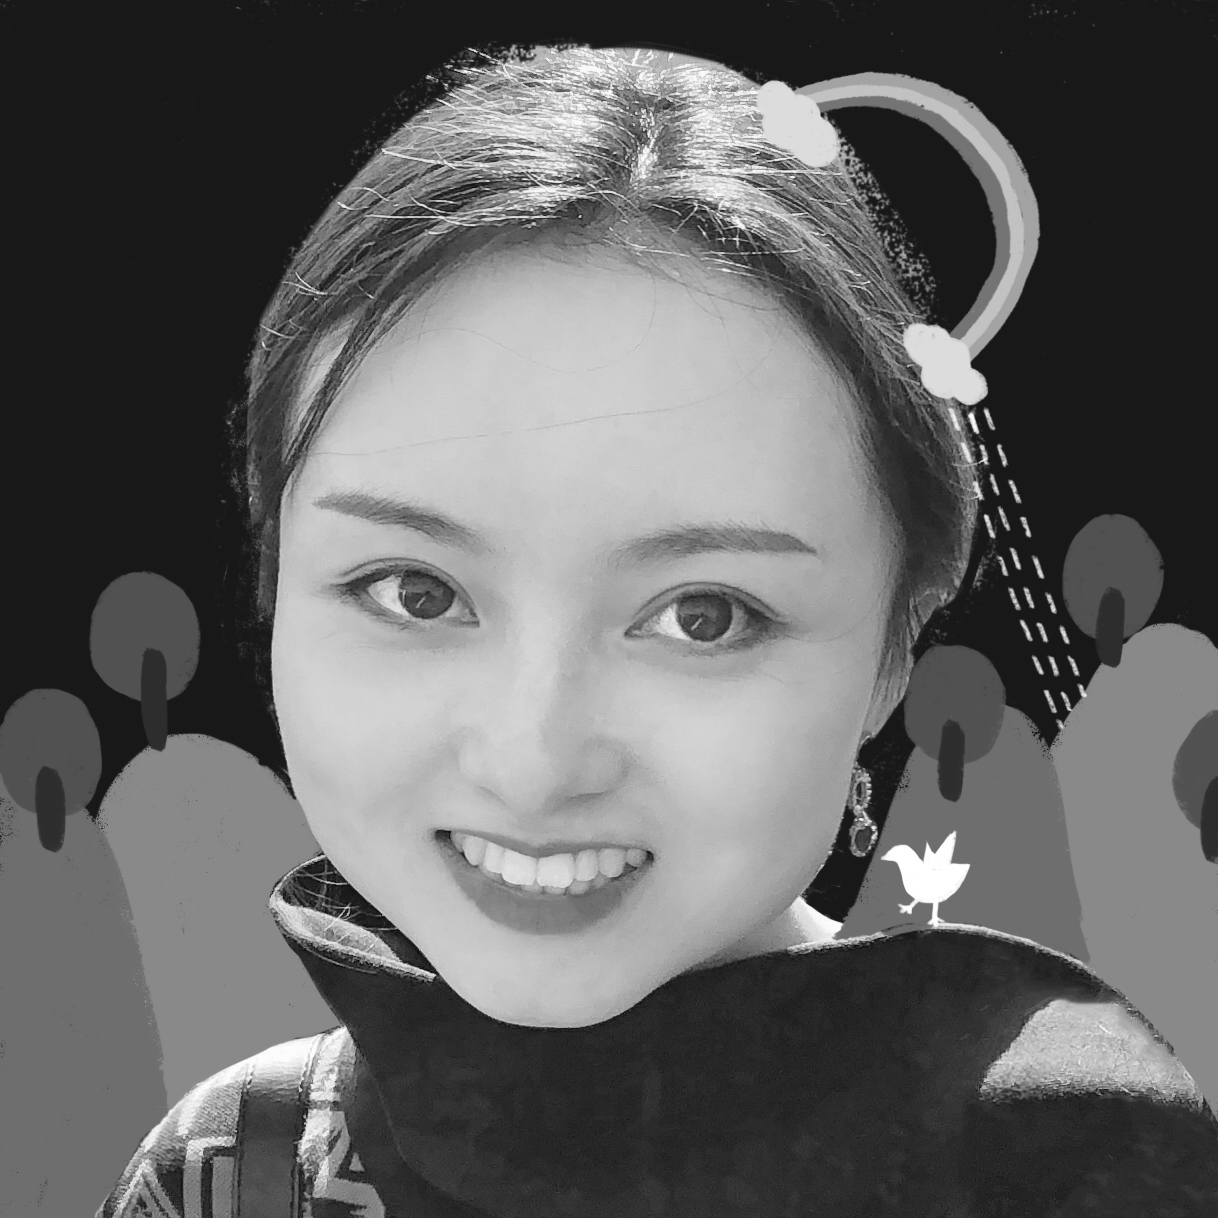 Xiaojie Liu